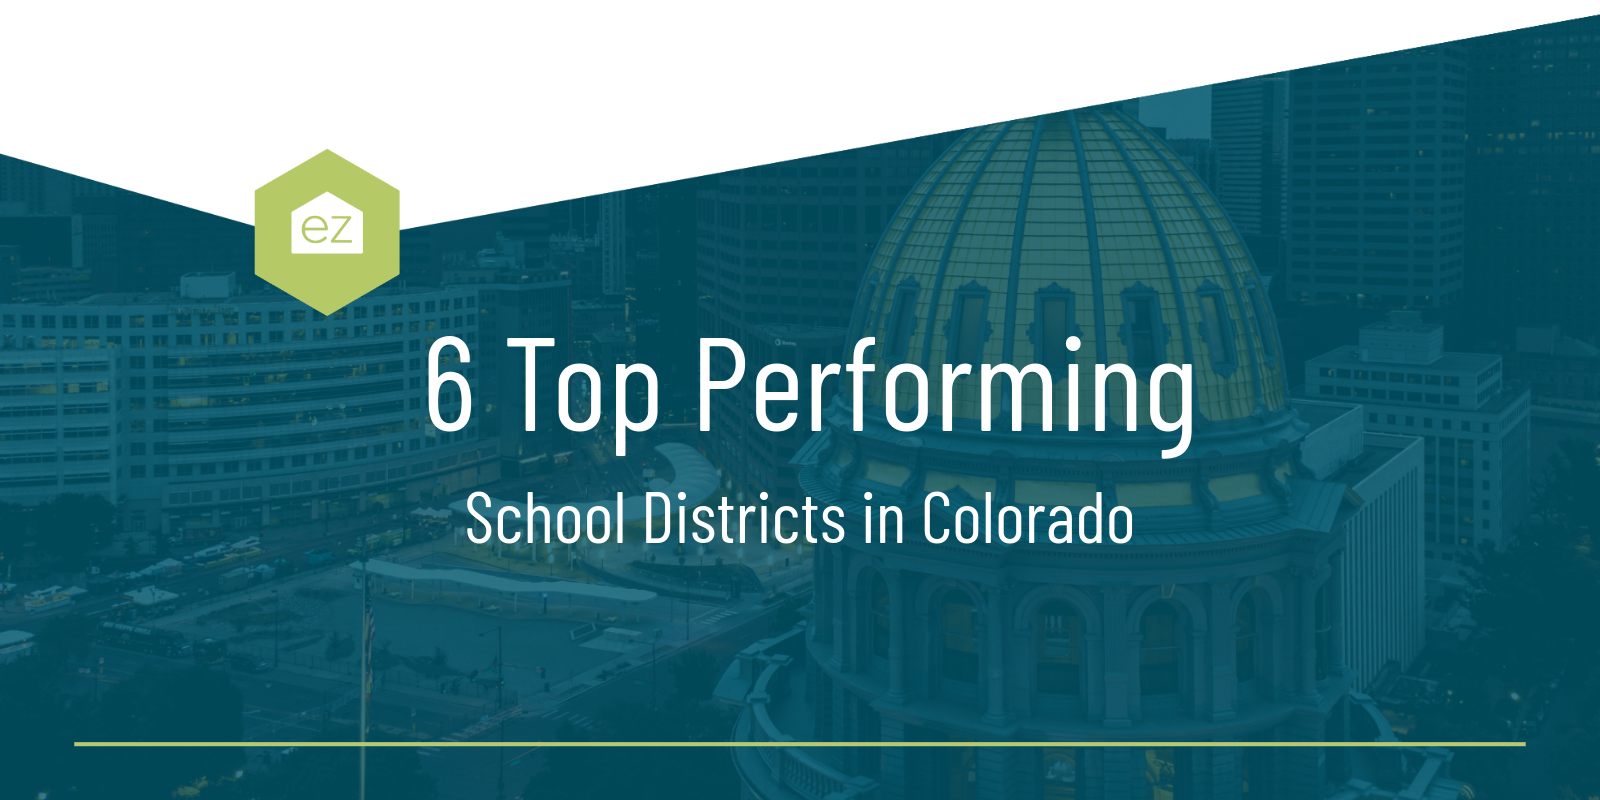 School Districts in Colorado